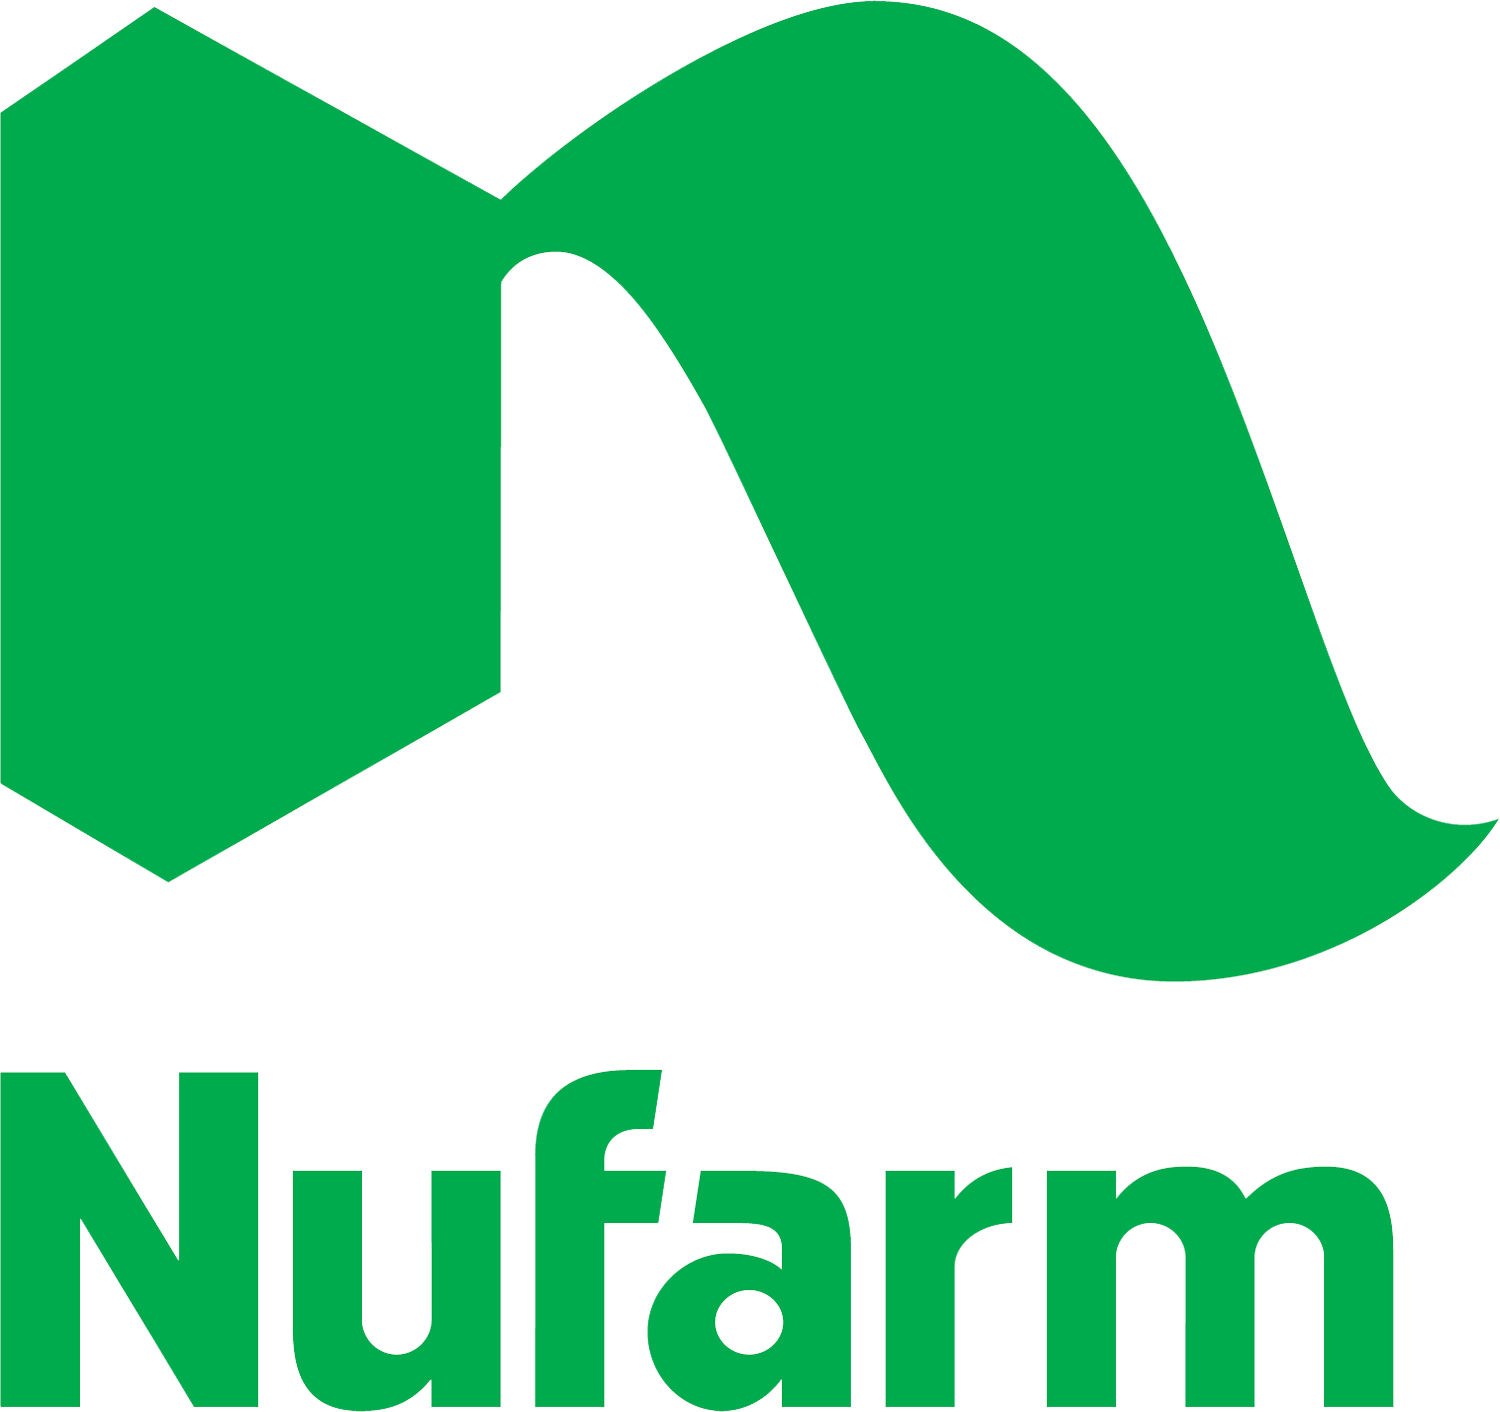 NuFarm Logo